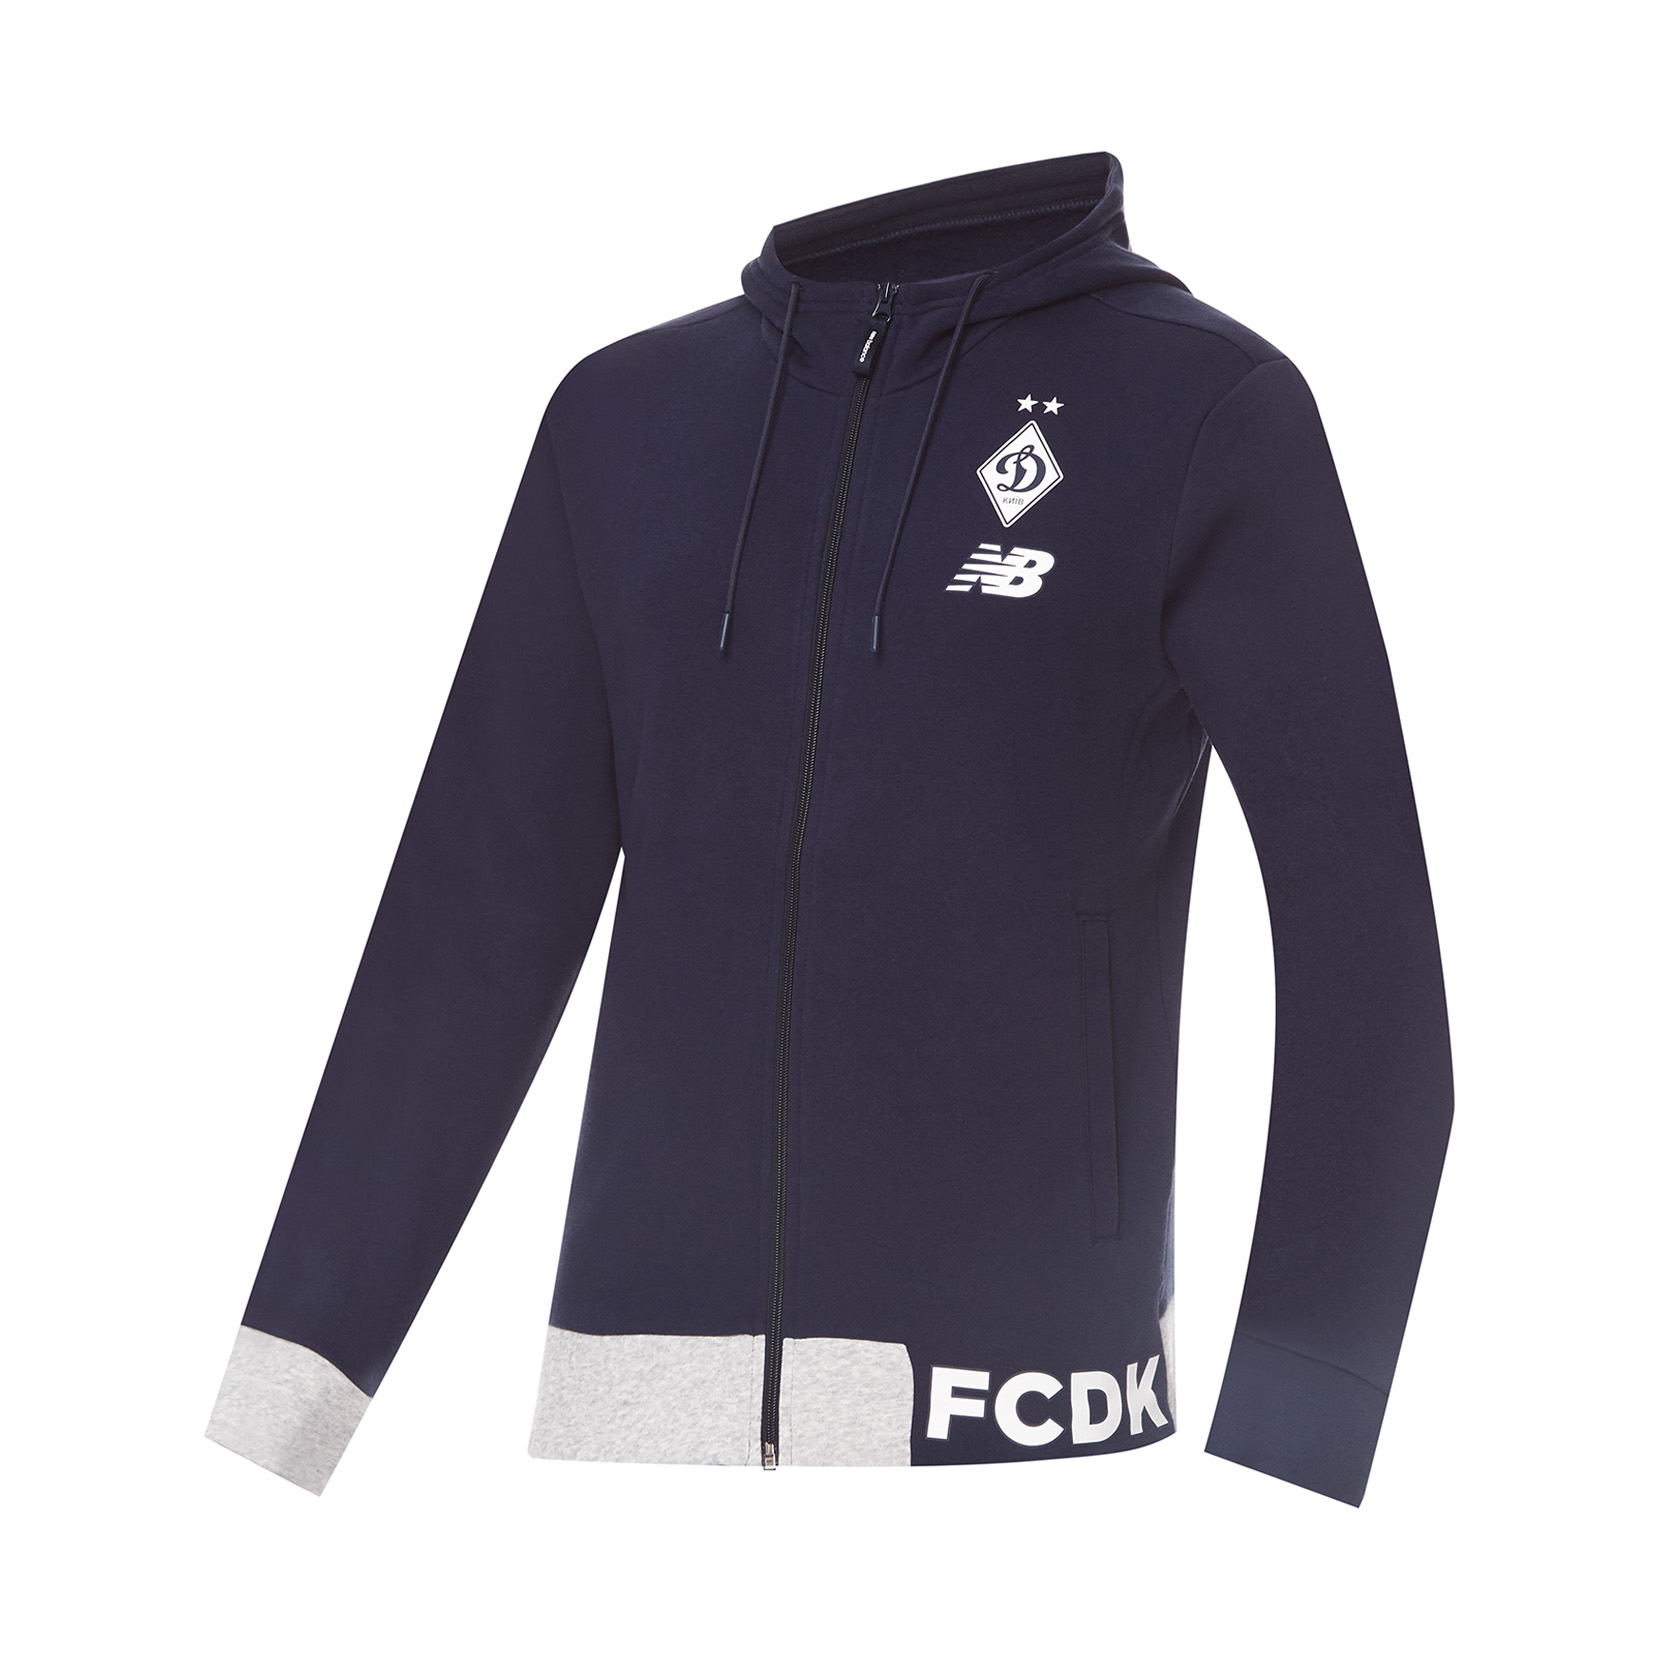 FCDK navy blue jacket